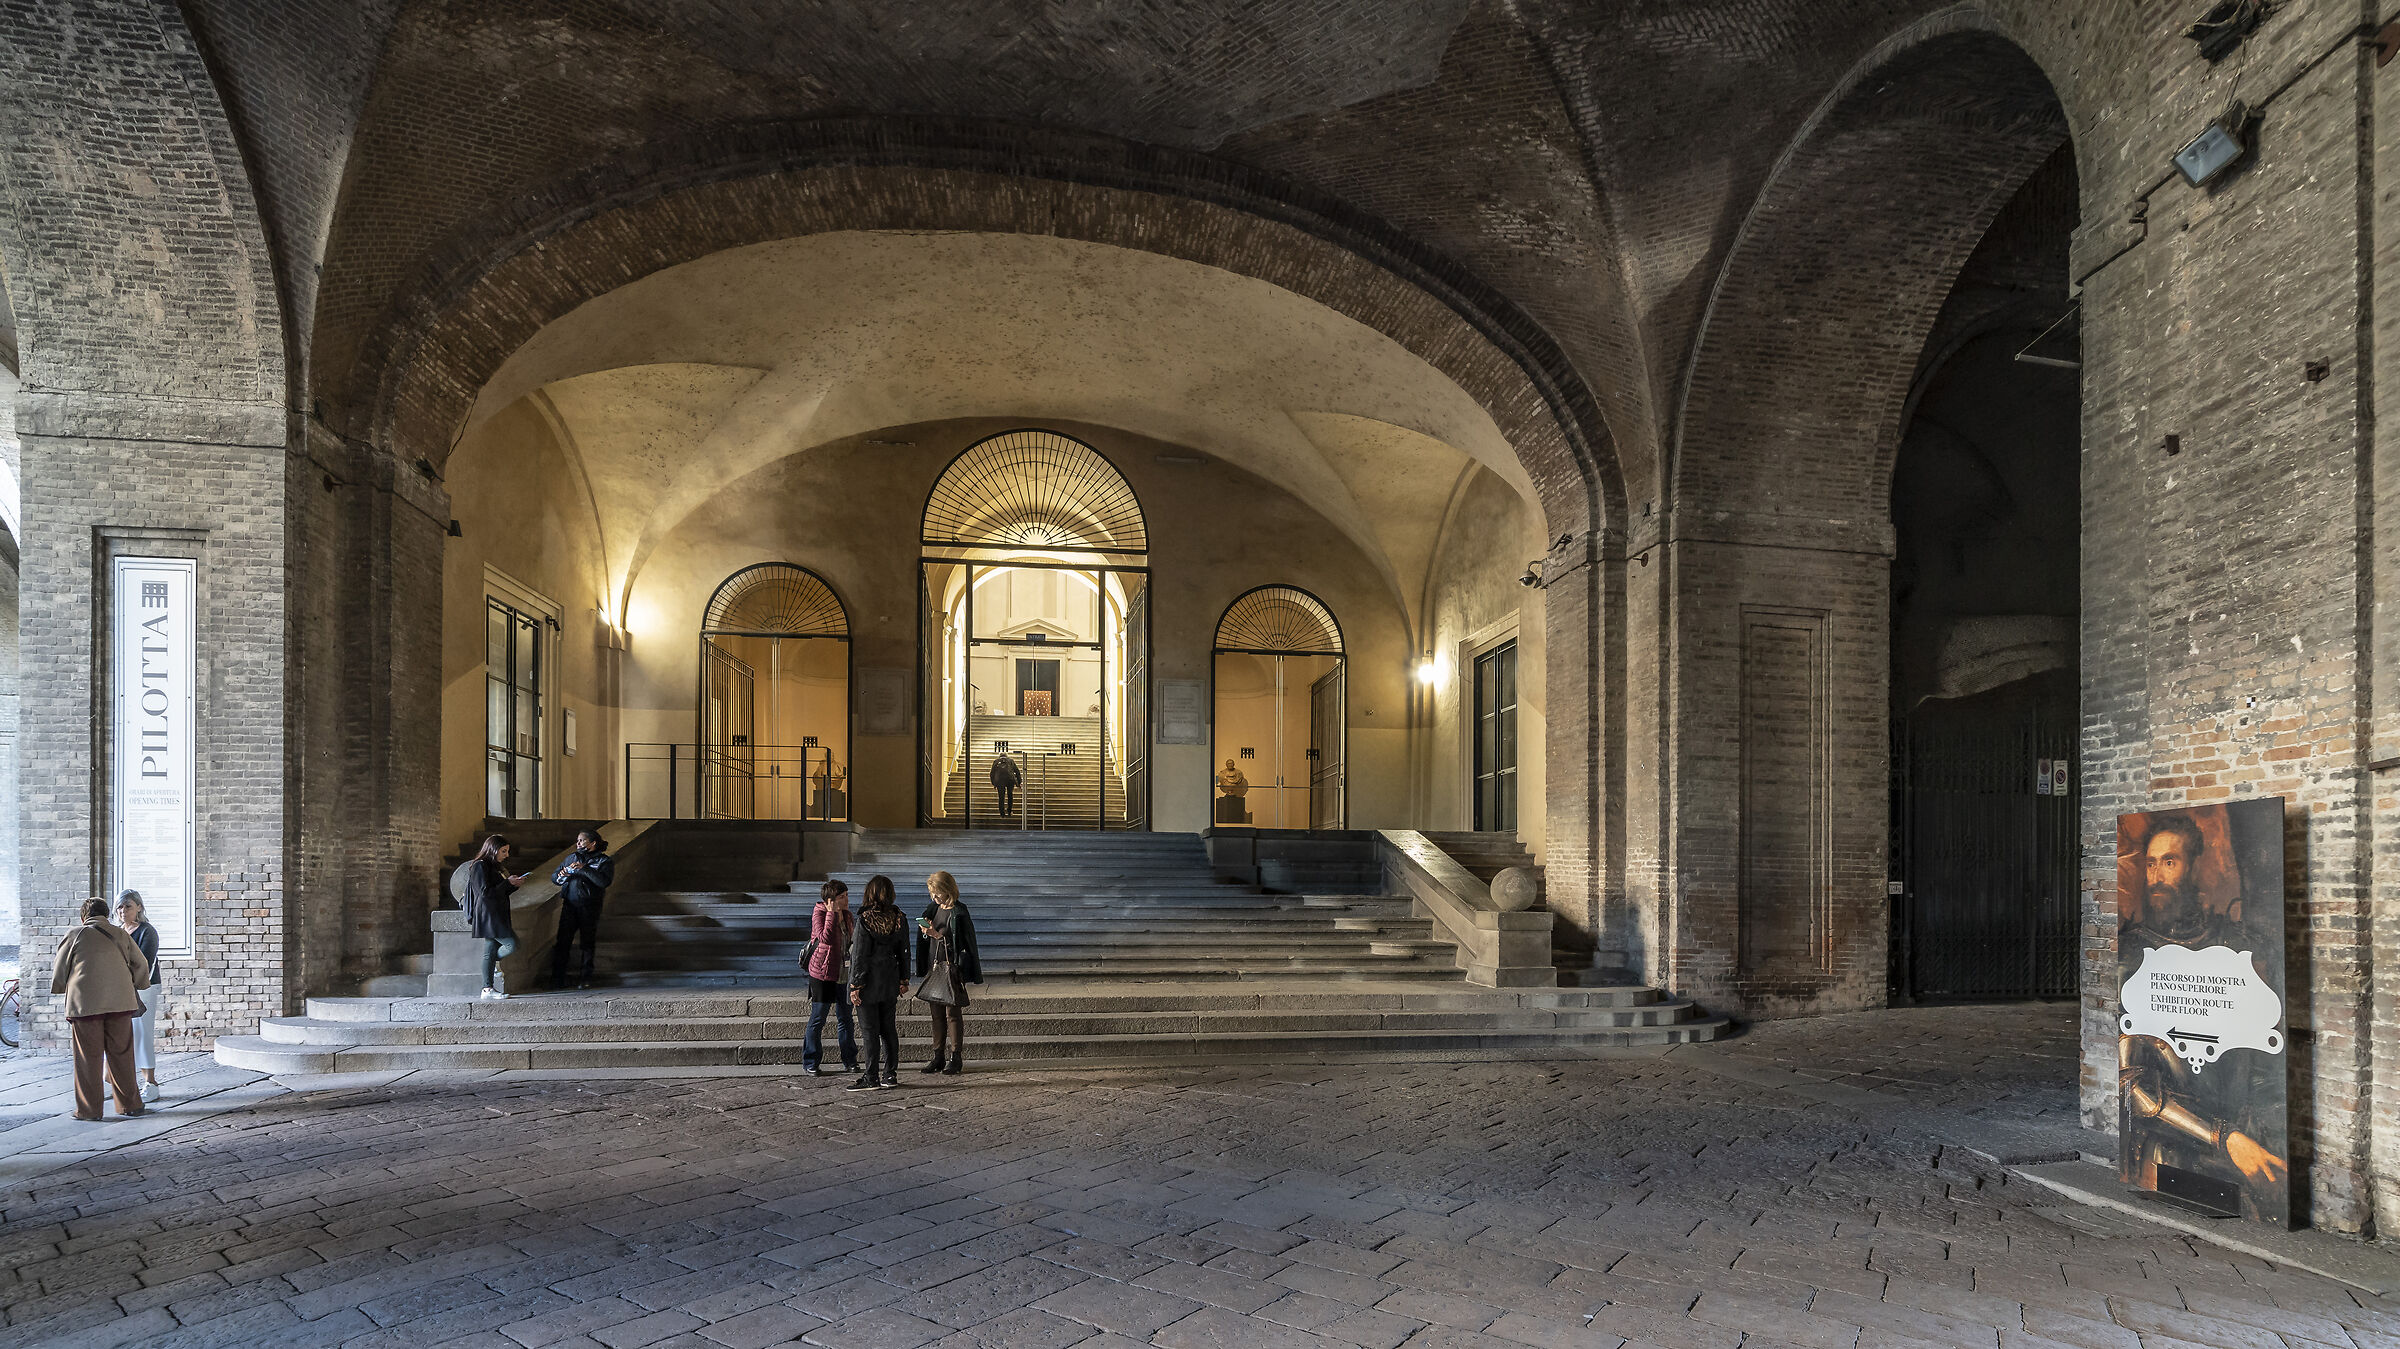 Pilatta - Entrance to the Farnese Theatre...